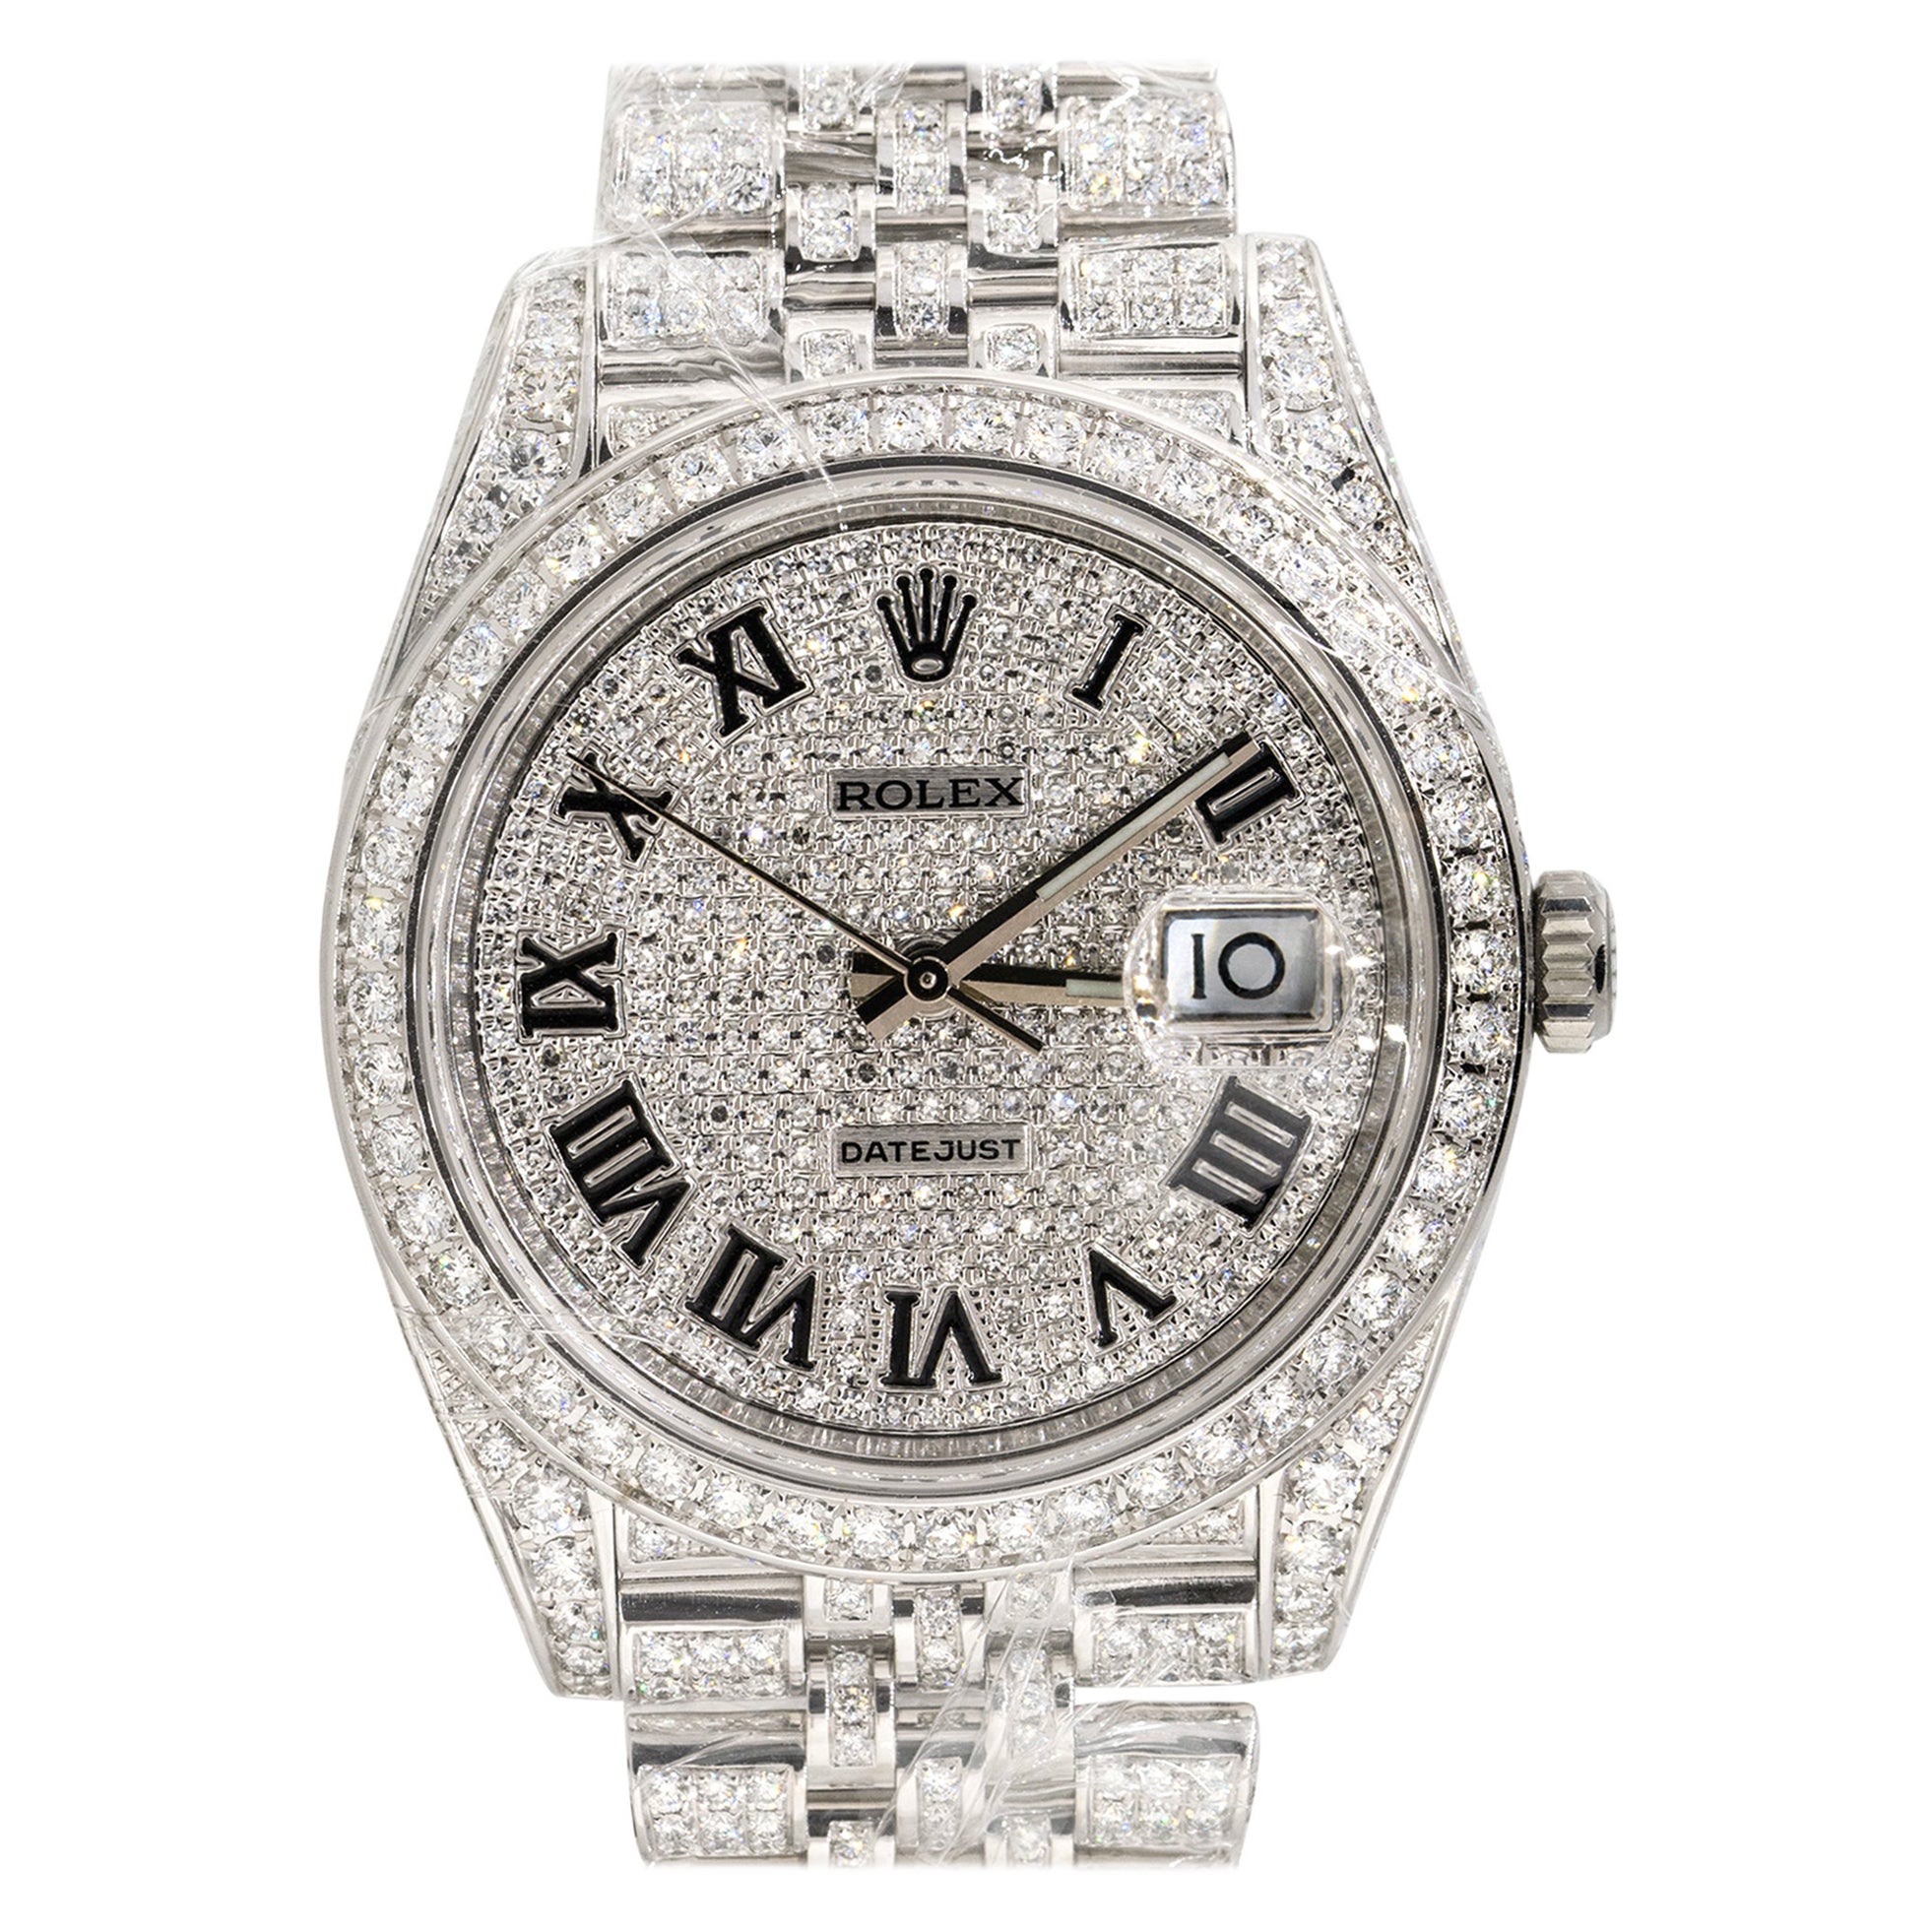 Rolex 126300 Datejust II All Diamond Black Roman Dial Watch